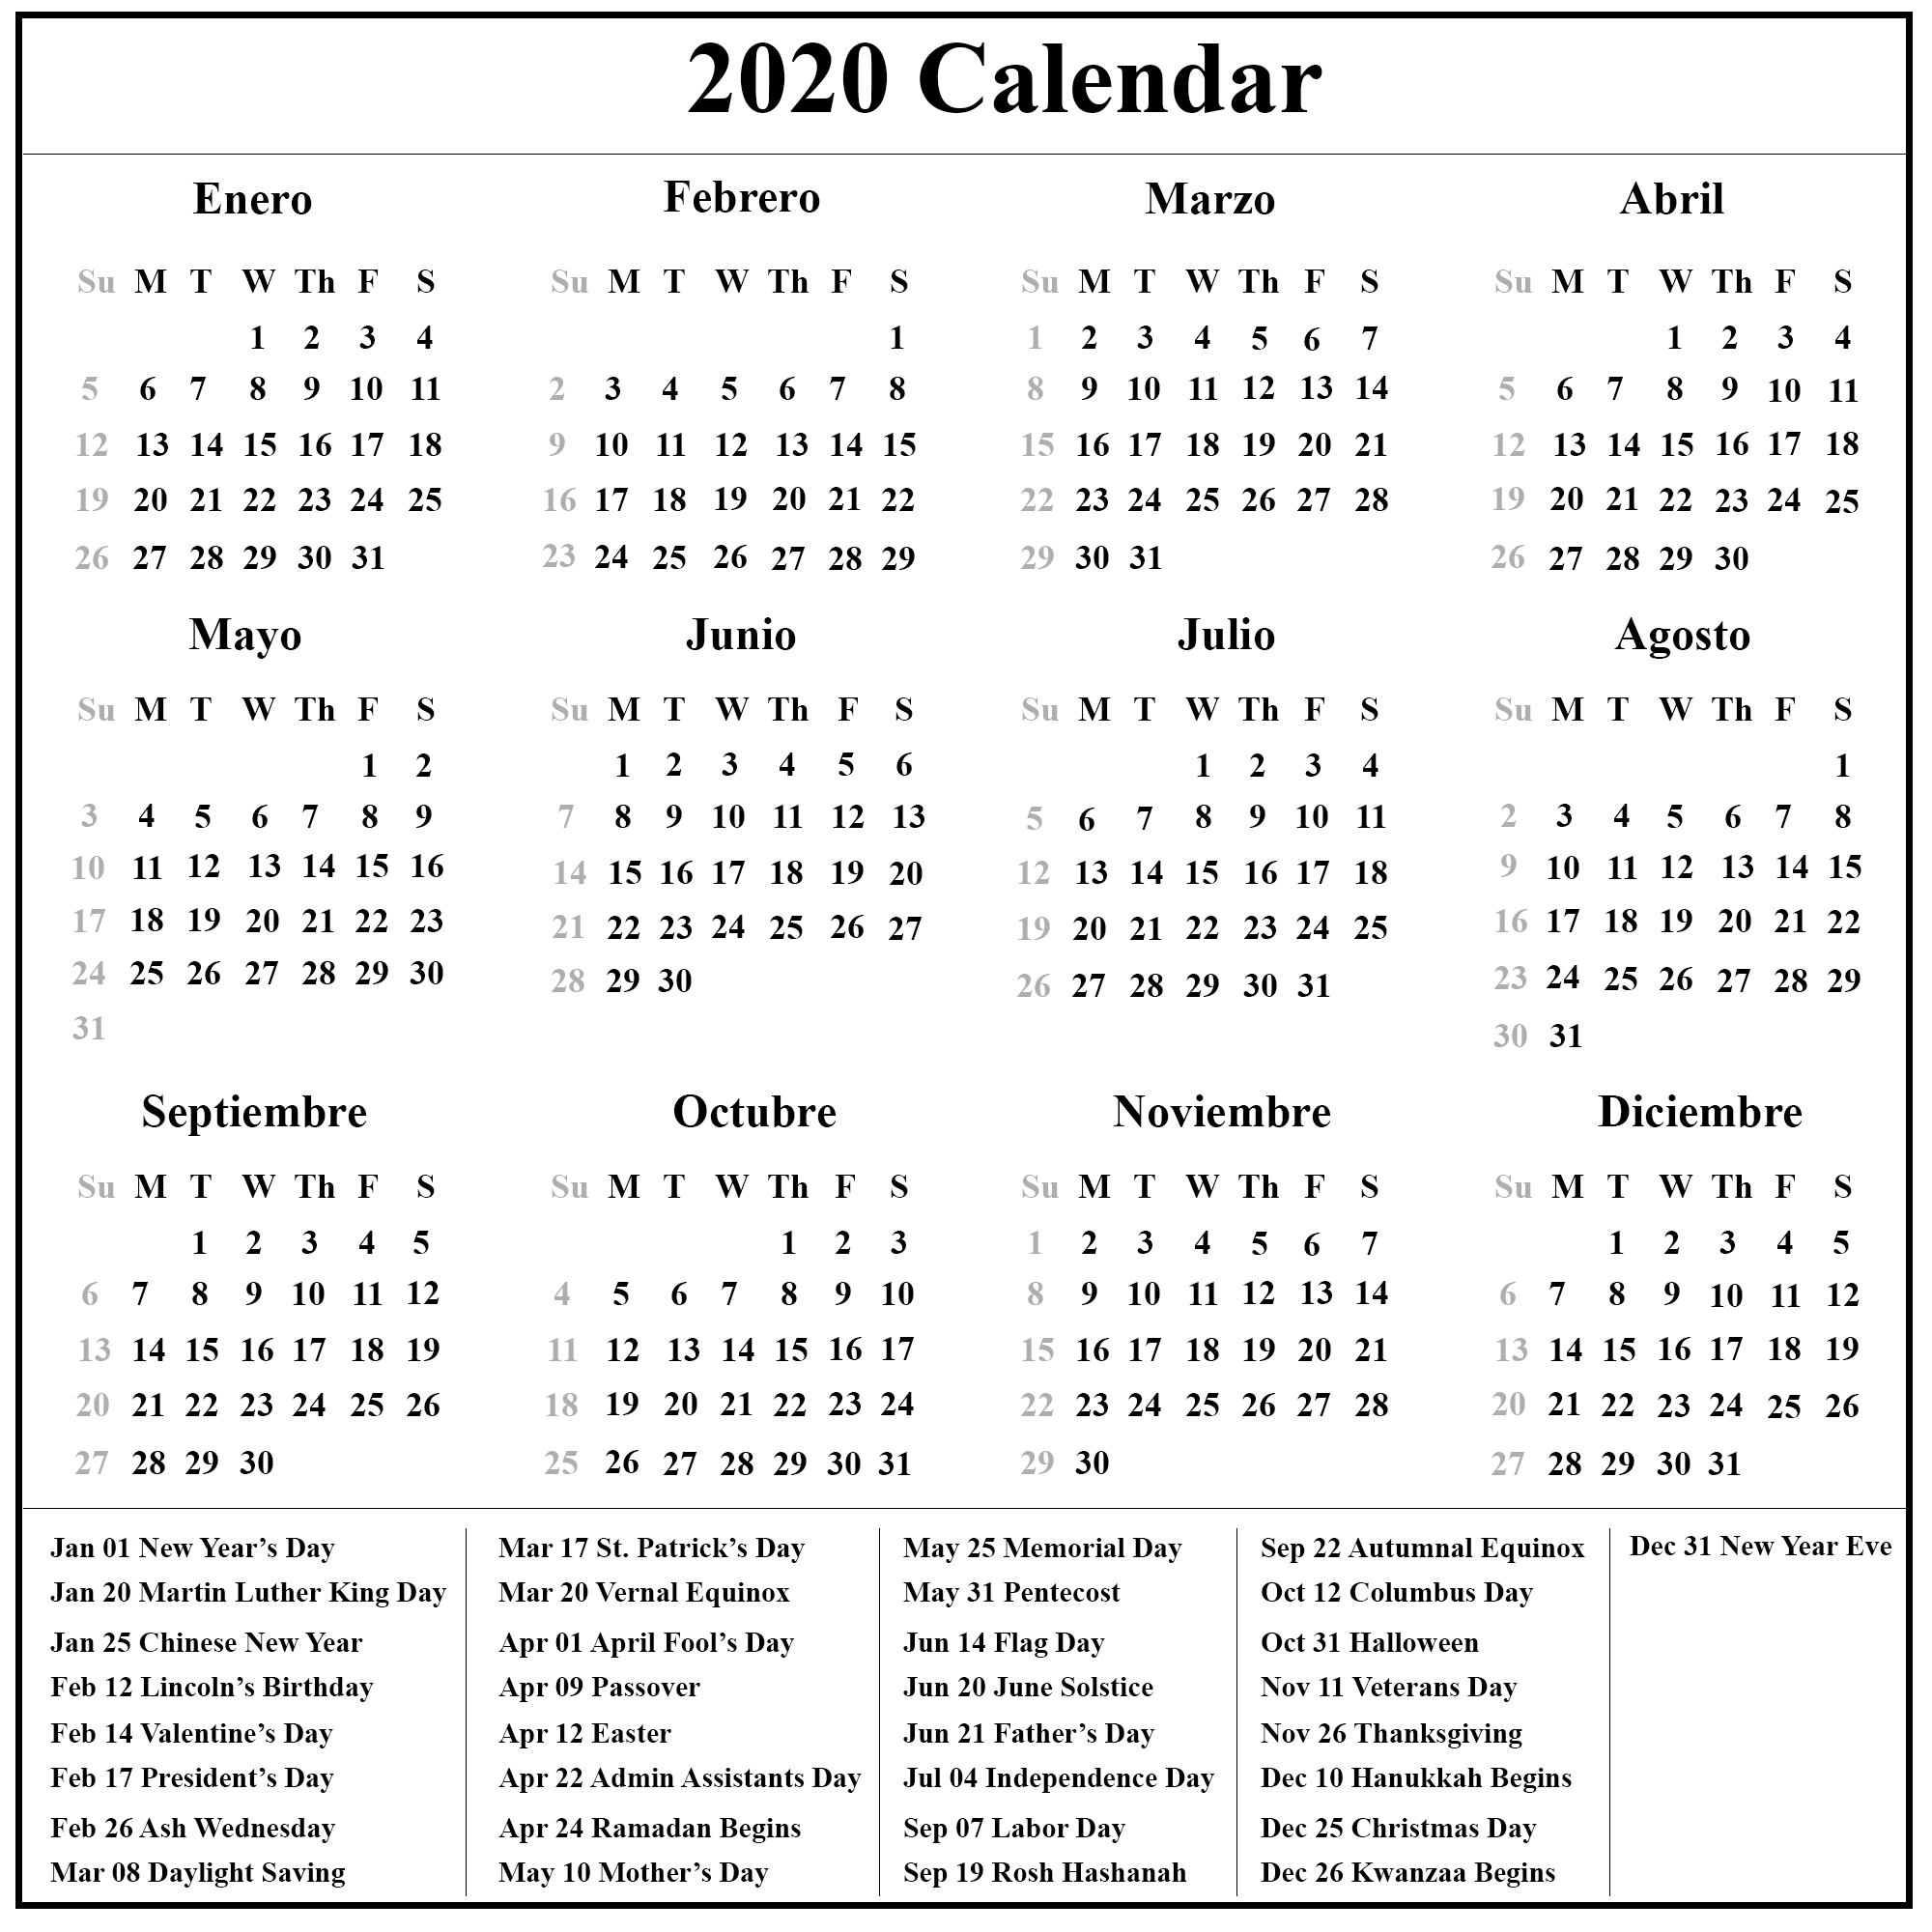 Free Printable Spanish Calendar 2020 | 2020 Calendario-Printable Jewish Holidays 2020-2020